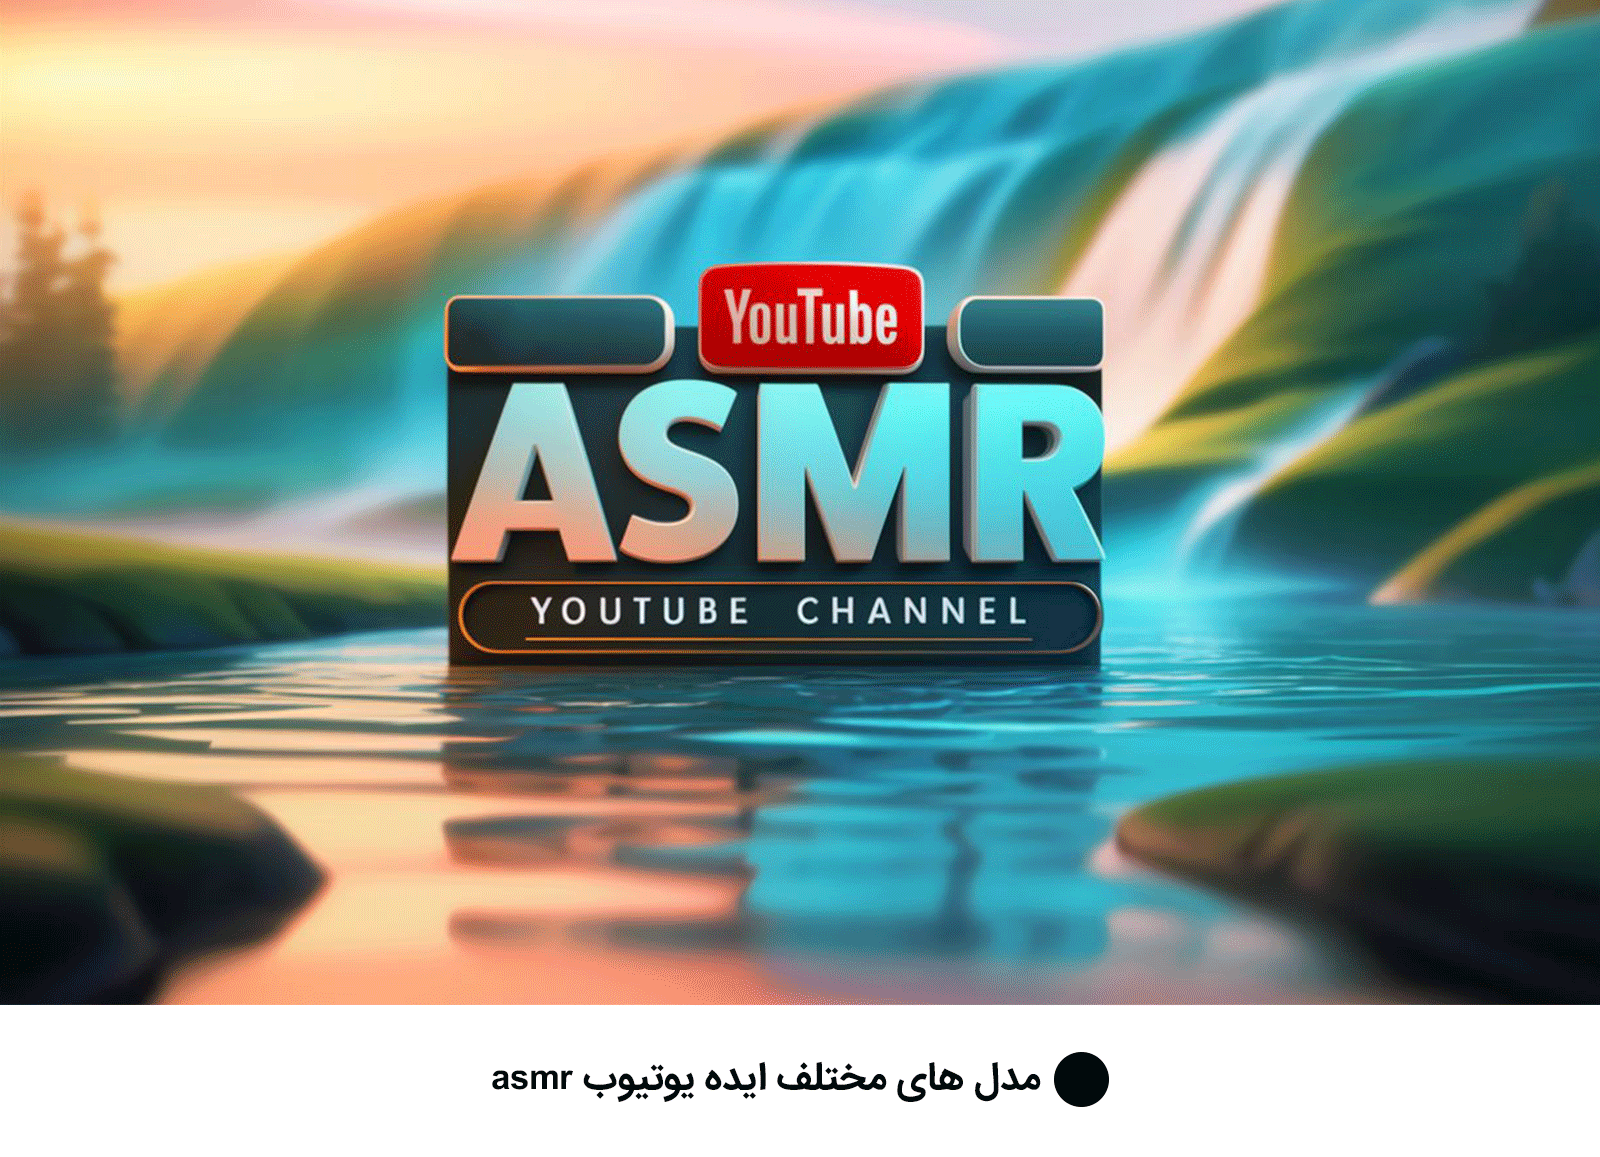 مدل های مختلف ایده یوتیوب asmr